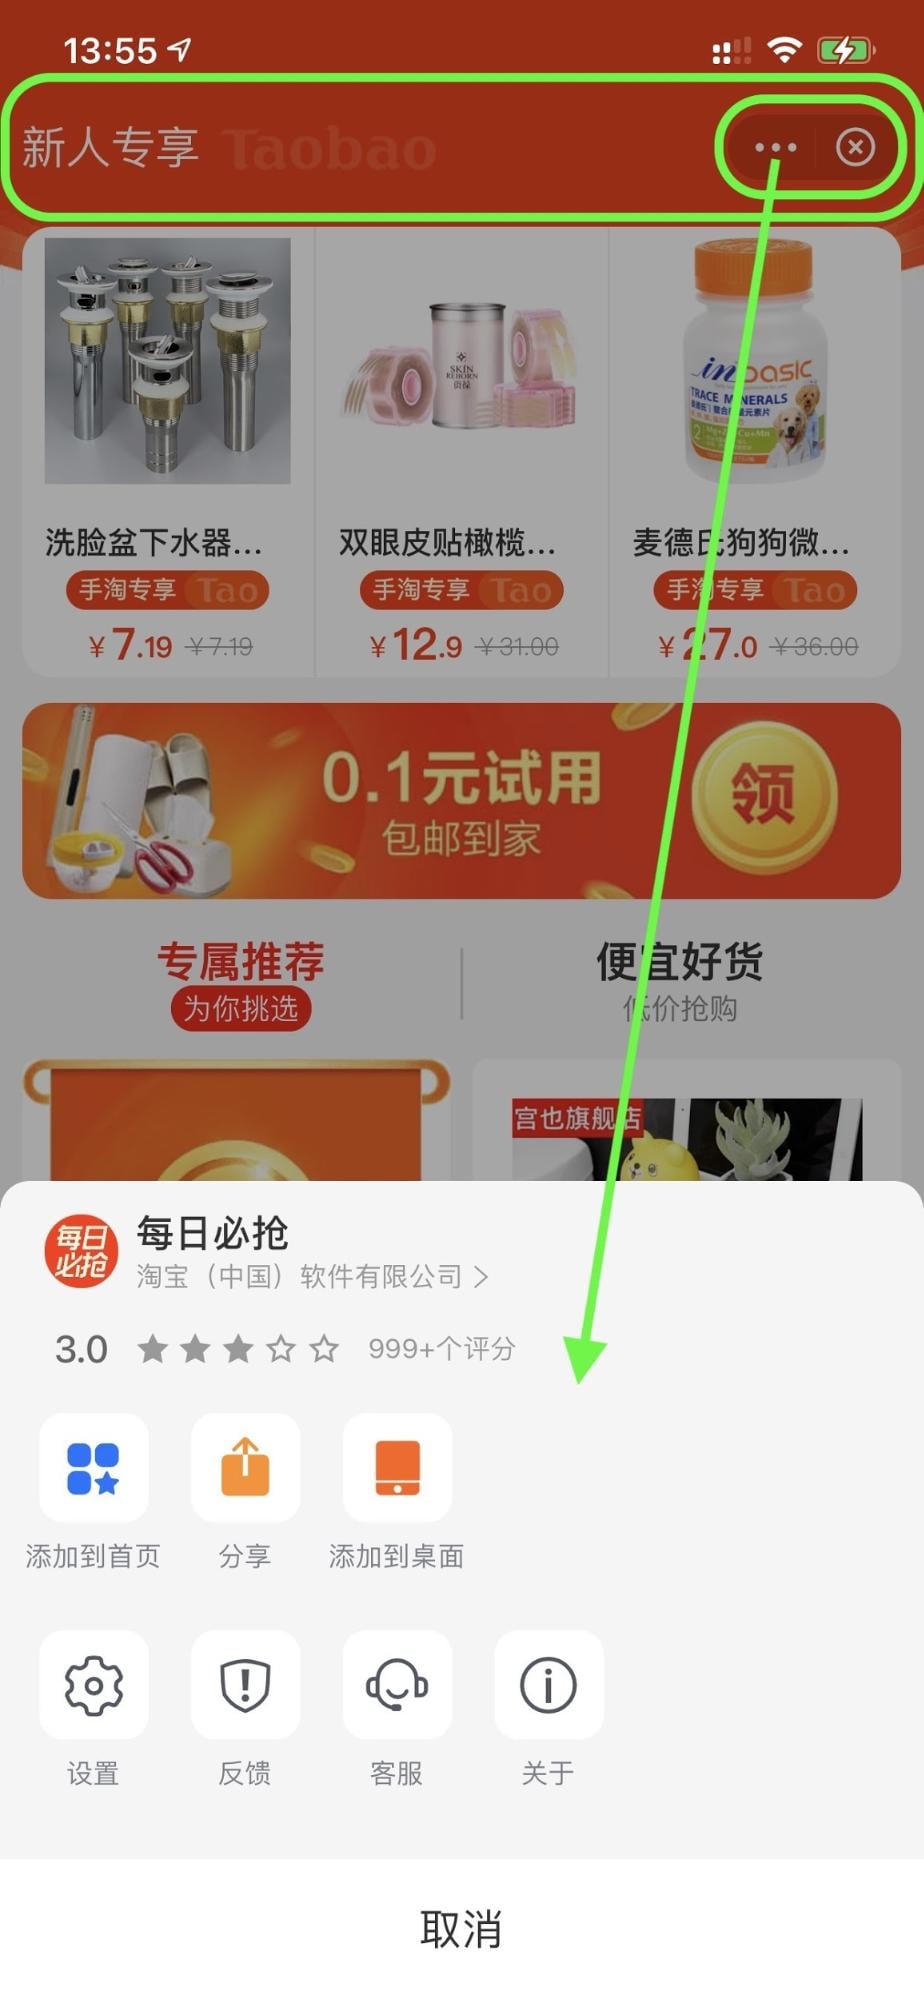 تطبيق Alipay المتميز الذي يشغِّل تطبيقًا صغيرًا للتسوق مع شريط علوي بارز وزر قائمة إجراءات وزر إغلاق. تم فتح قائمة الإجراءات.